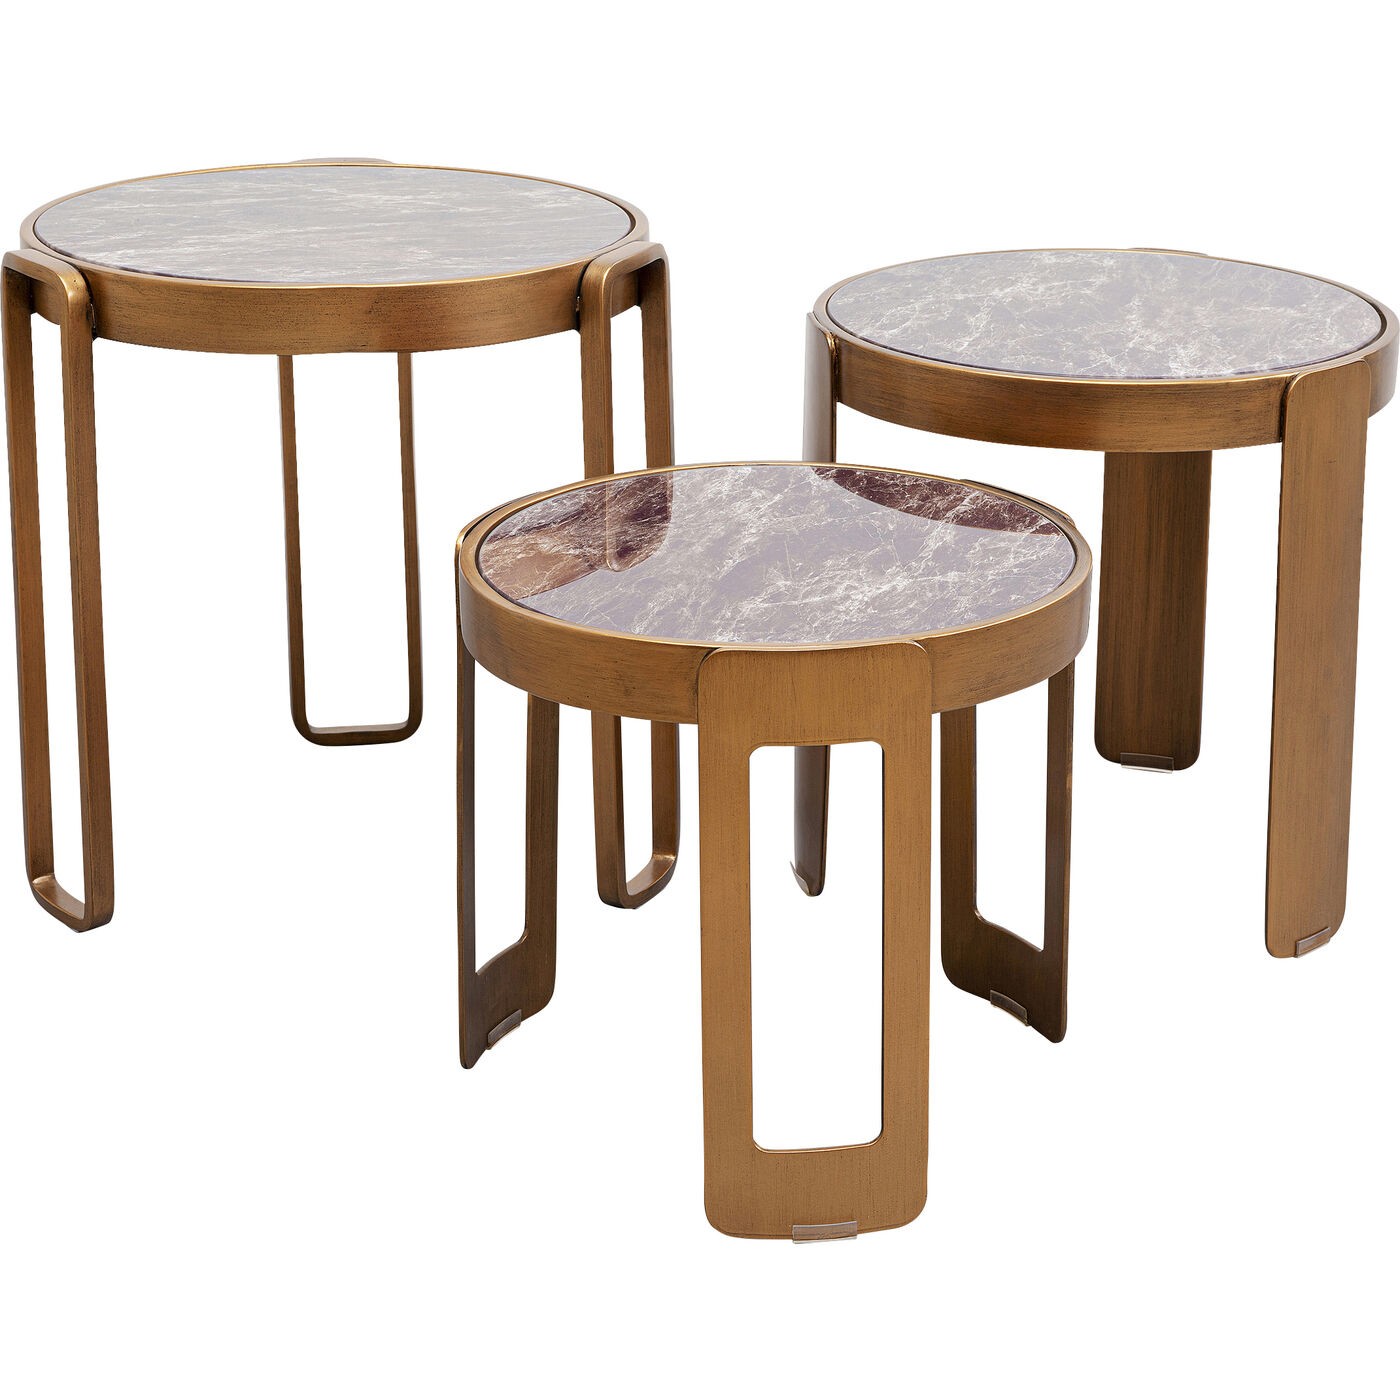 3 tables basses en verre effet marbre noir et acier cuivré